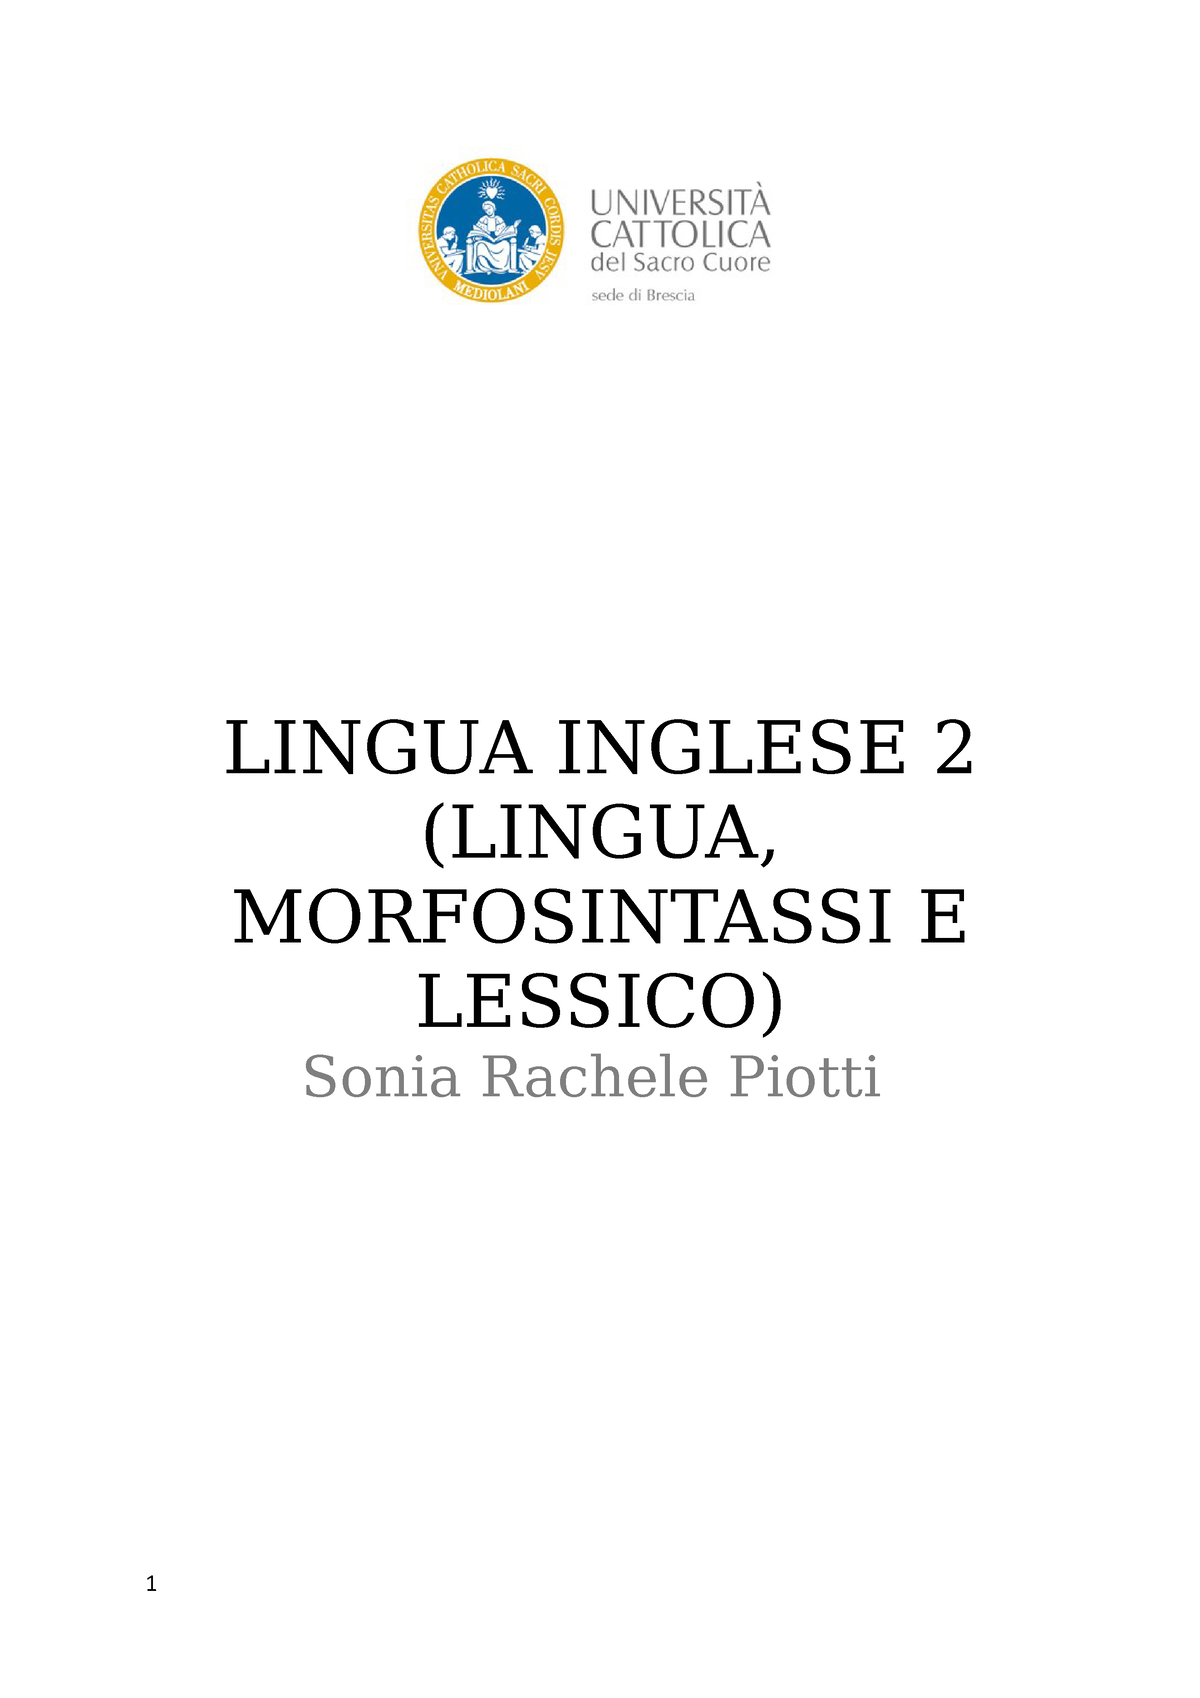 Lingua Inglese 2 Appunti Di Lezione Primo Semestre Lingua Inglese 2 Lingua Morfosintassi E 3315